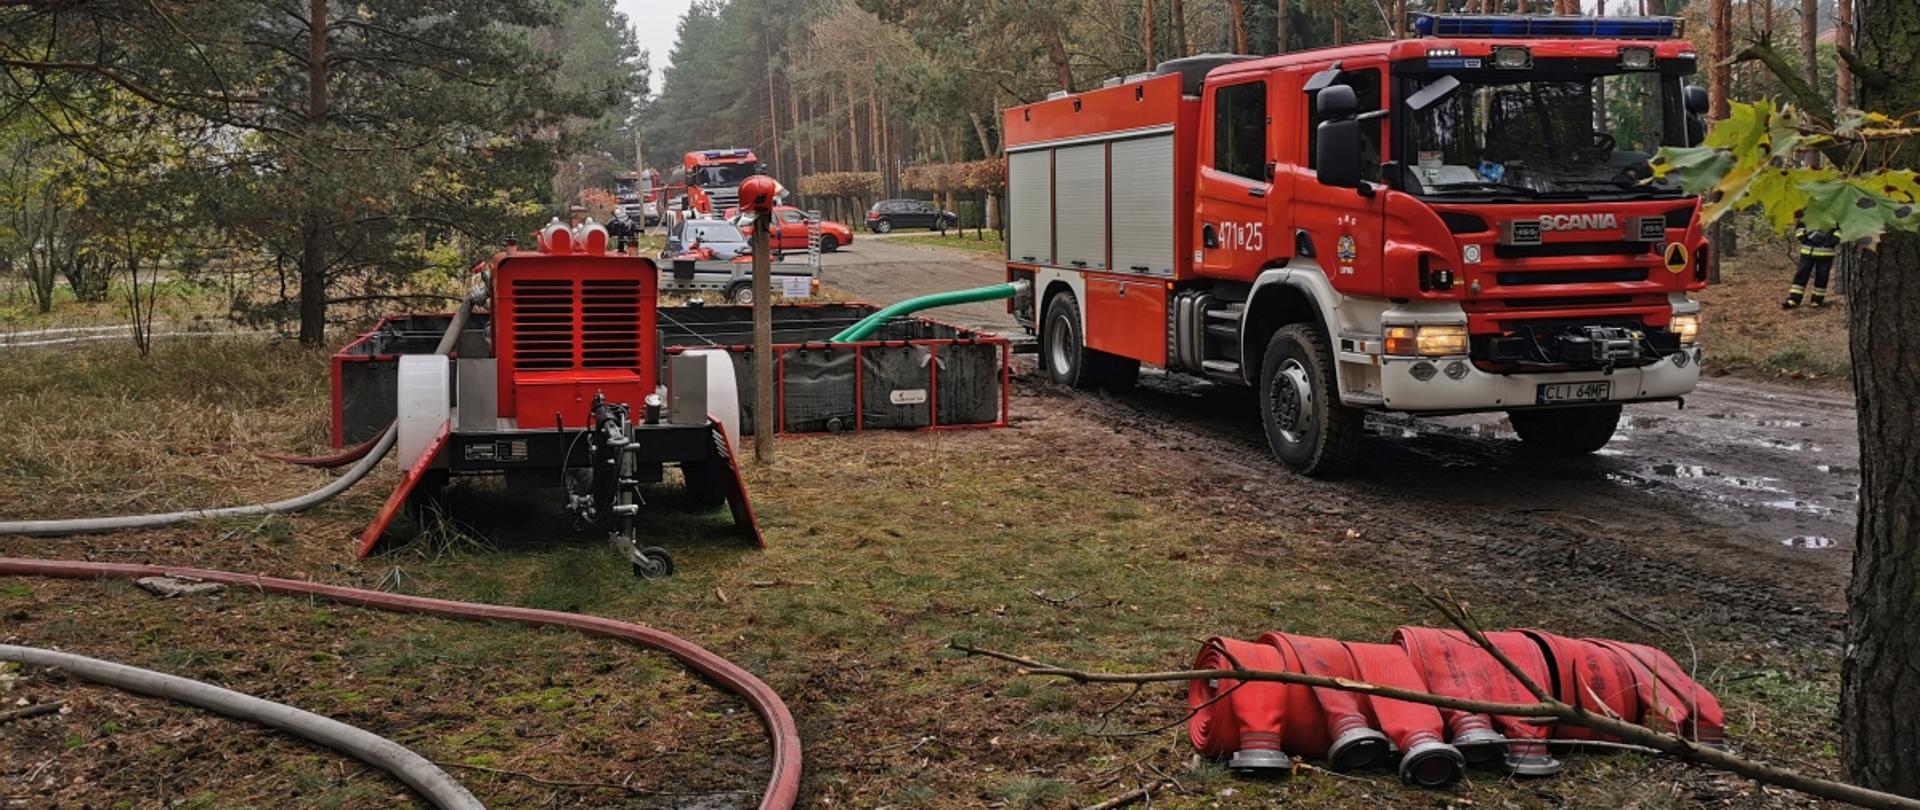 Doskonalenie zawodowe umiejętności strażaków w zakresie pompowania wody na duże odległości.